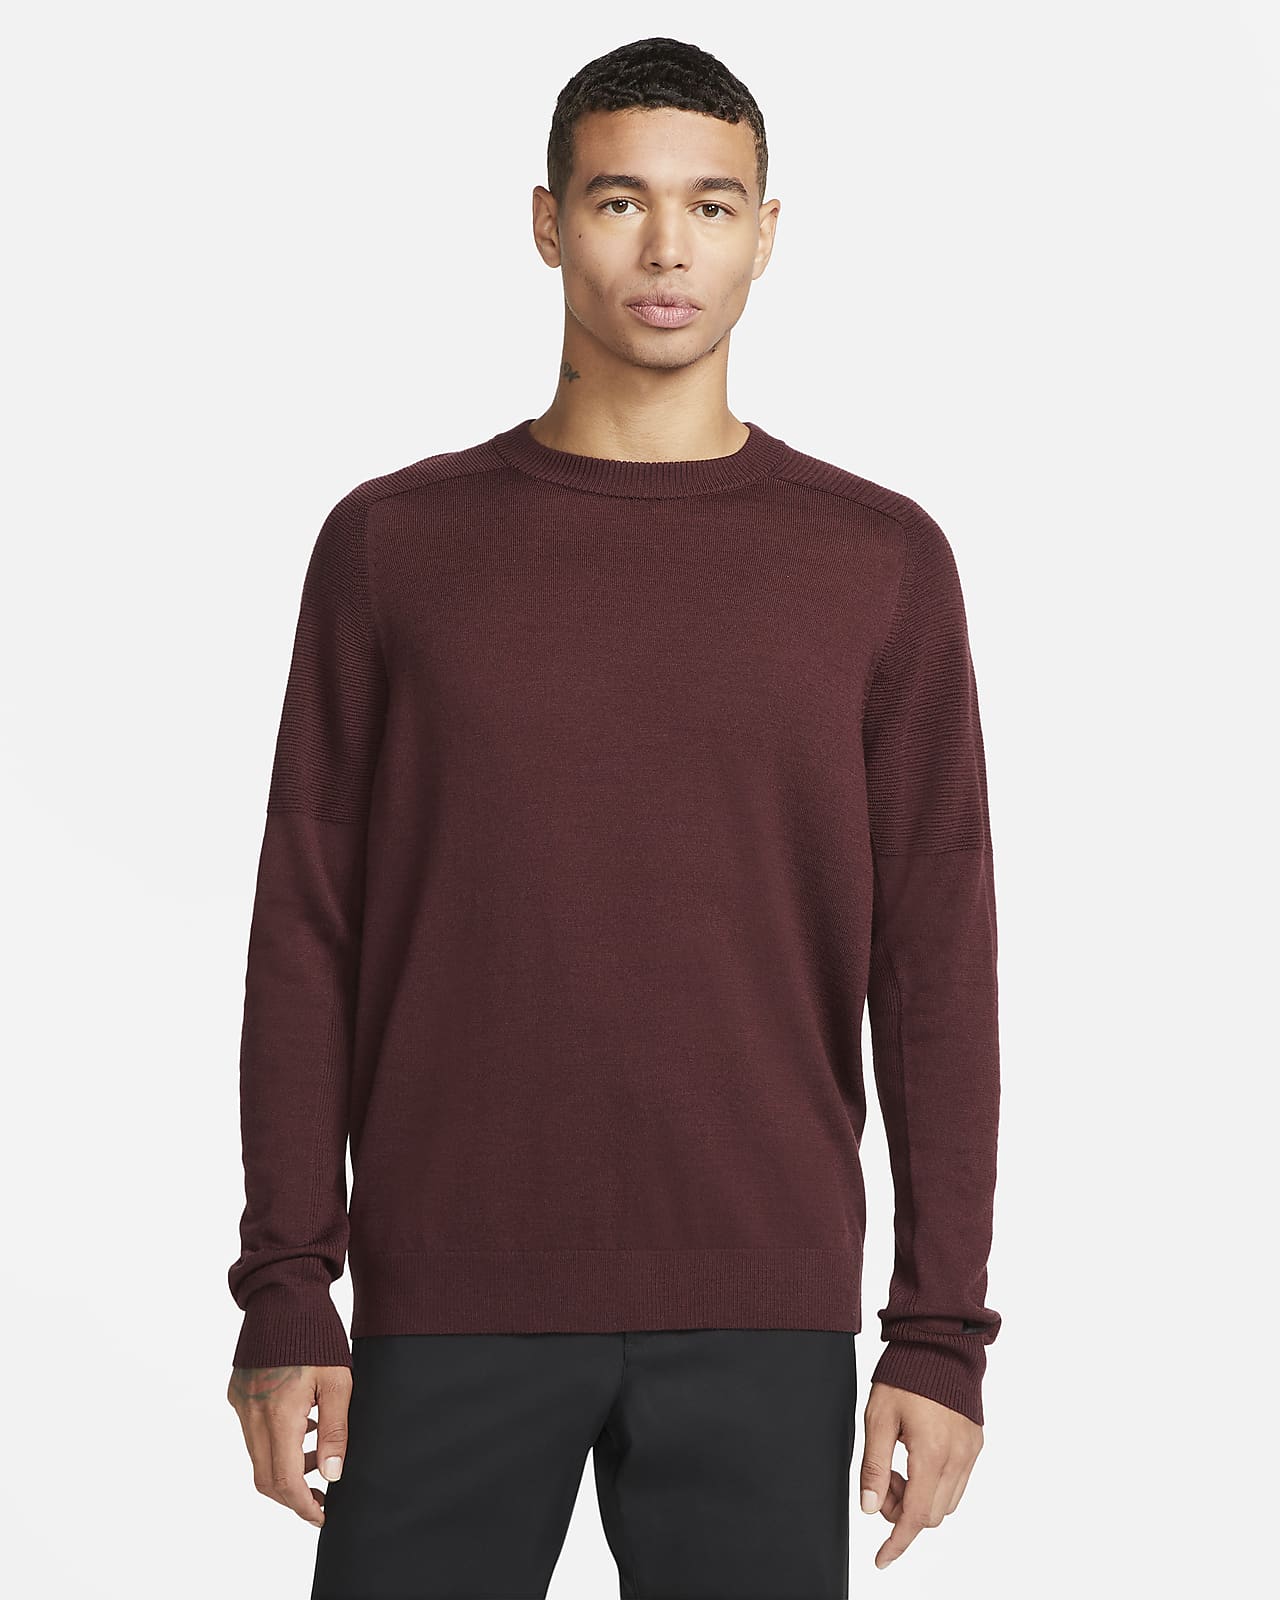 Sweater tejido para hombre Woods. Nike.com